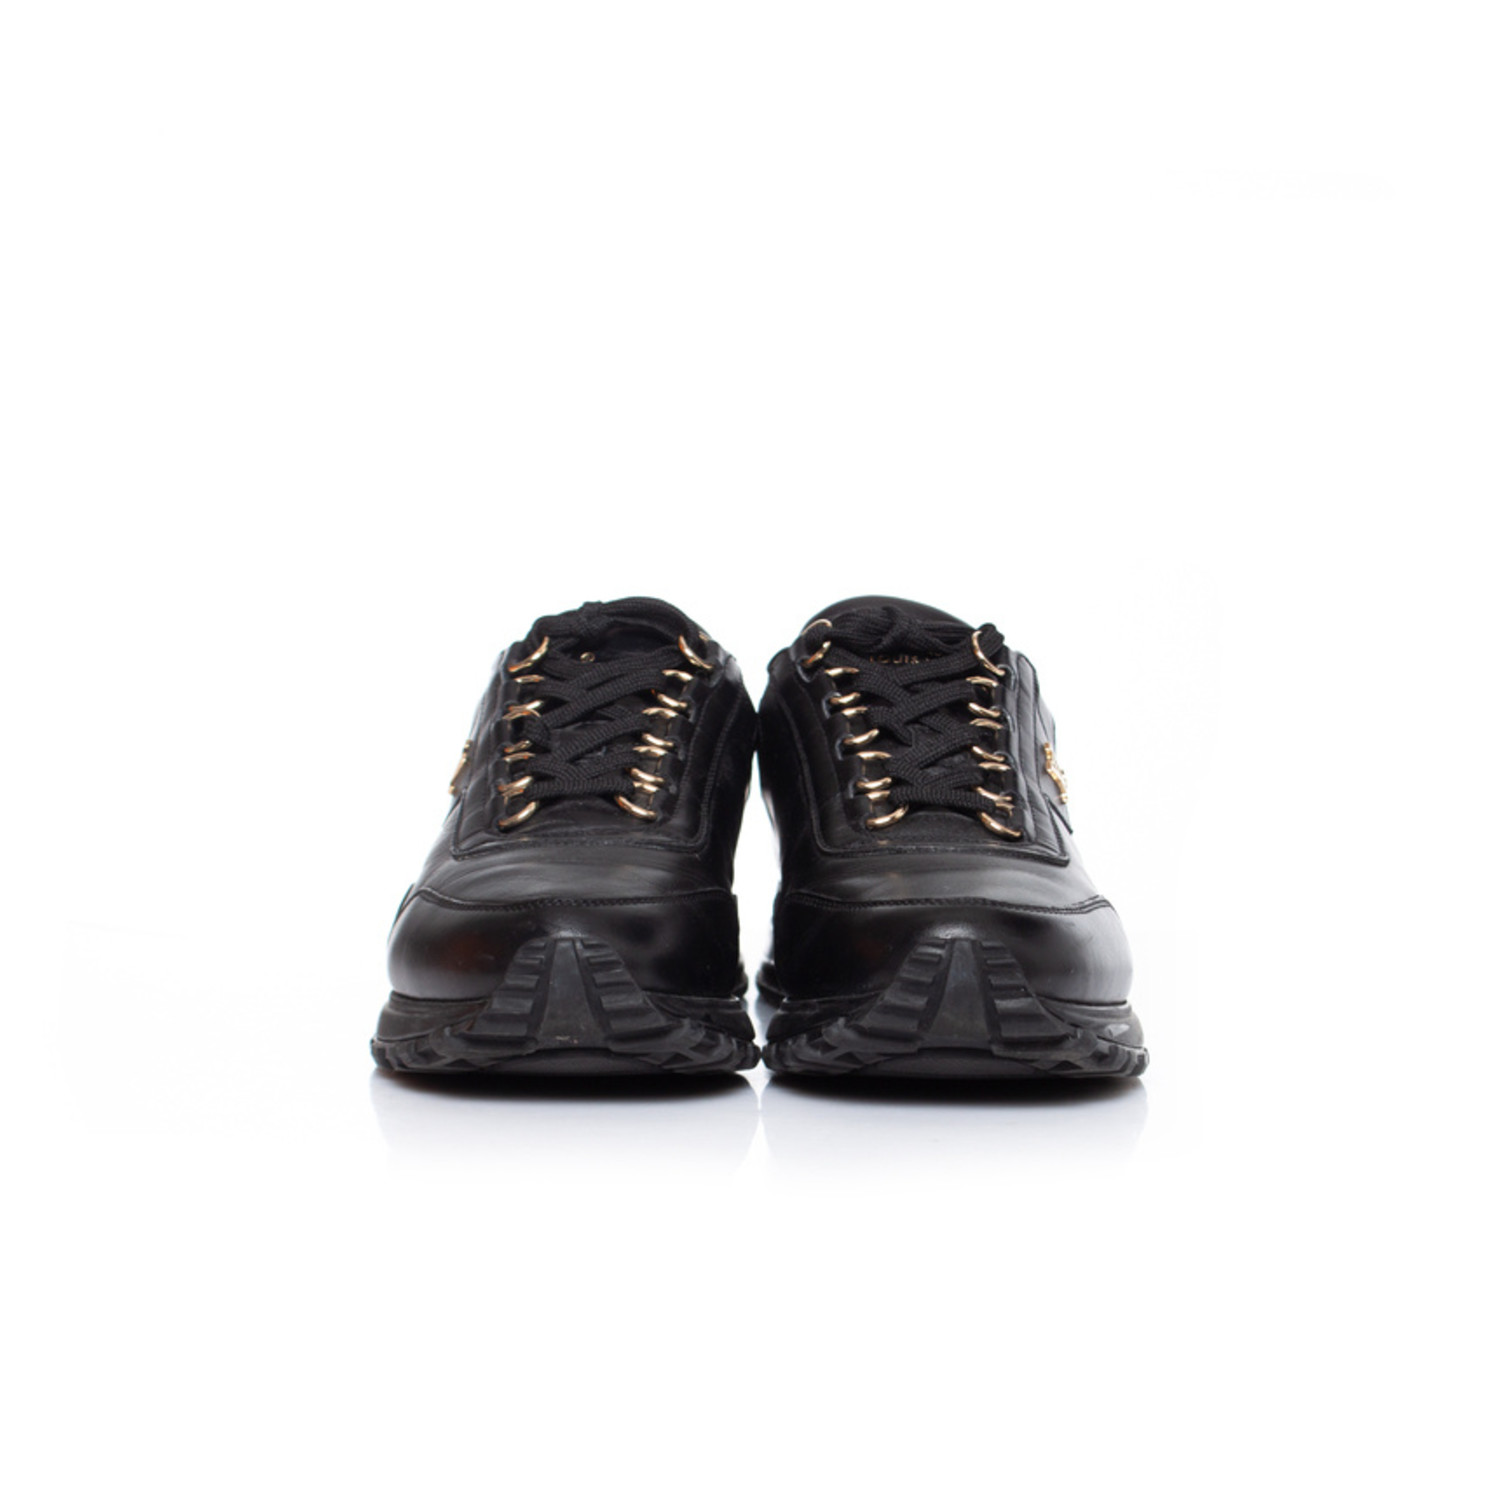 Louis Vuitton, Black leather sneakers. - Unique Designer Pieces